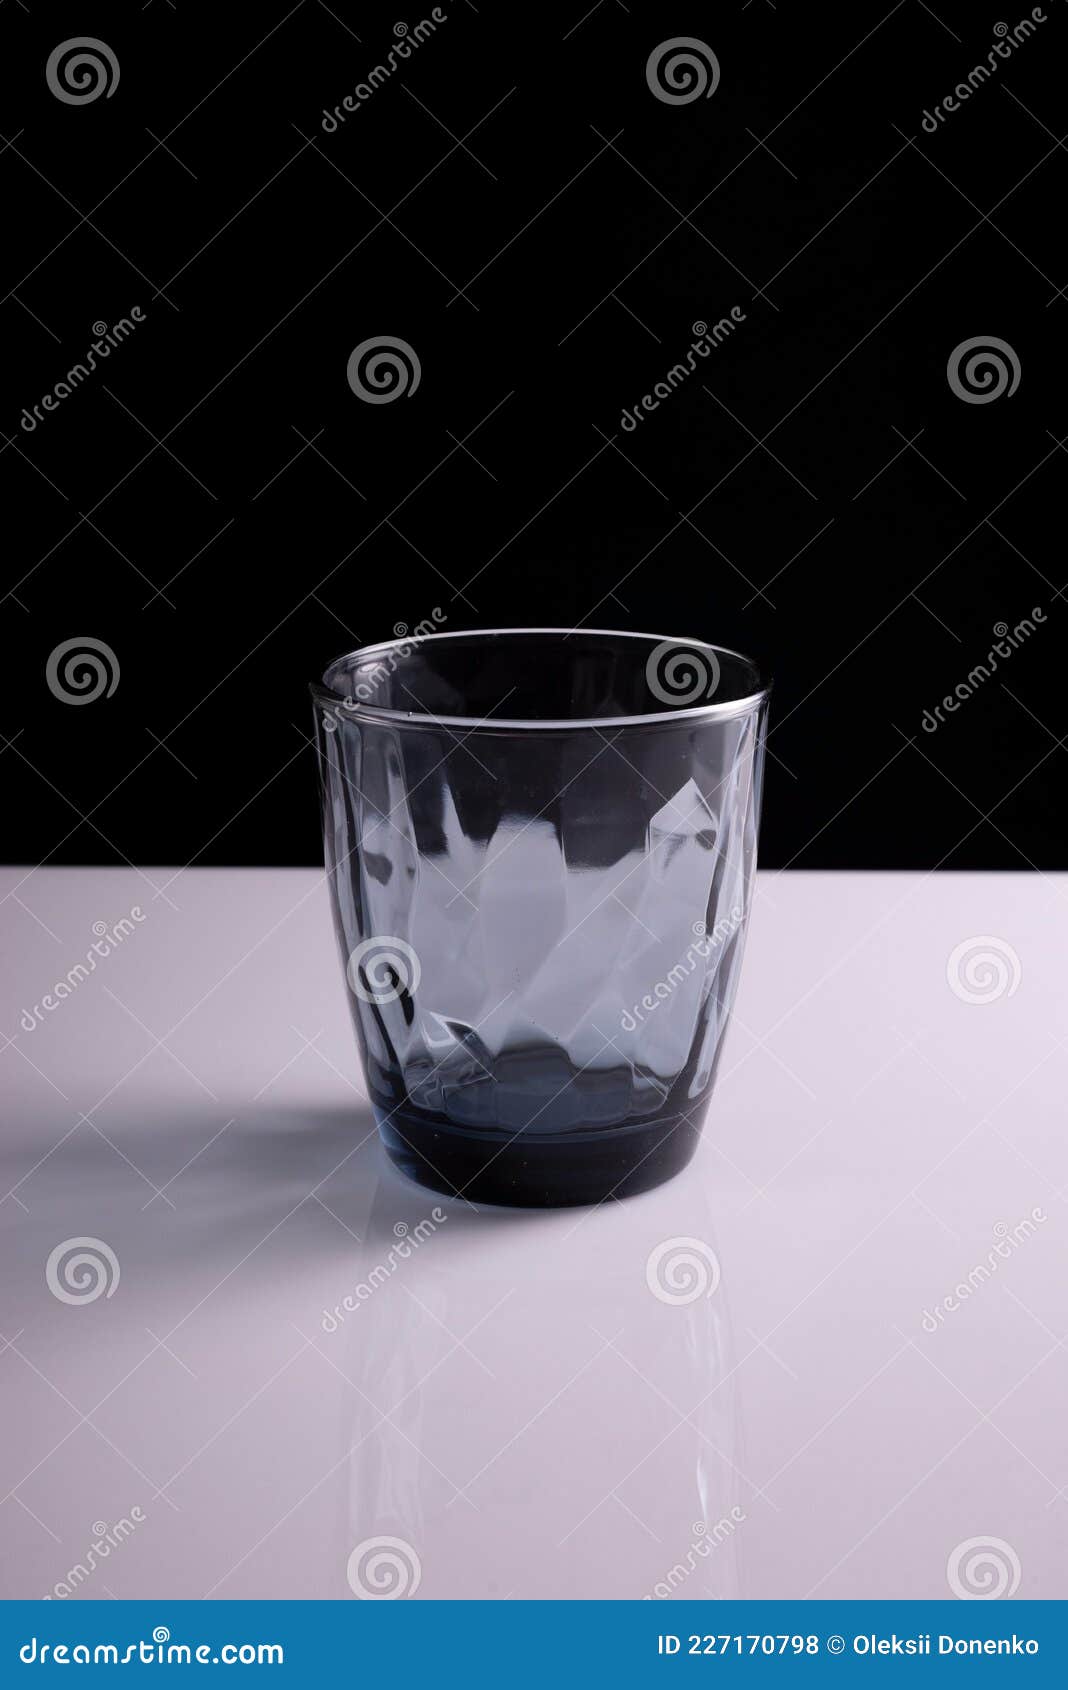 Vaso De Agua Negro Con Fondo Blanco Negro. Minimalista de Imagen de seco, celebre: